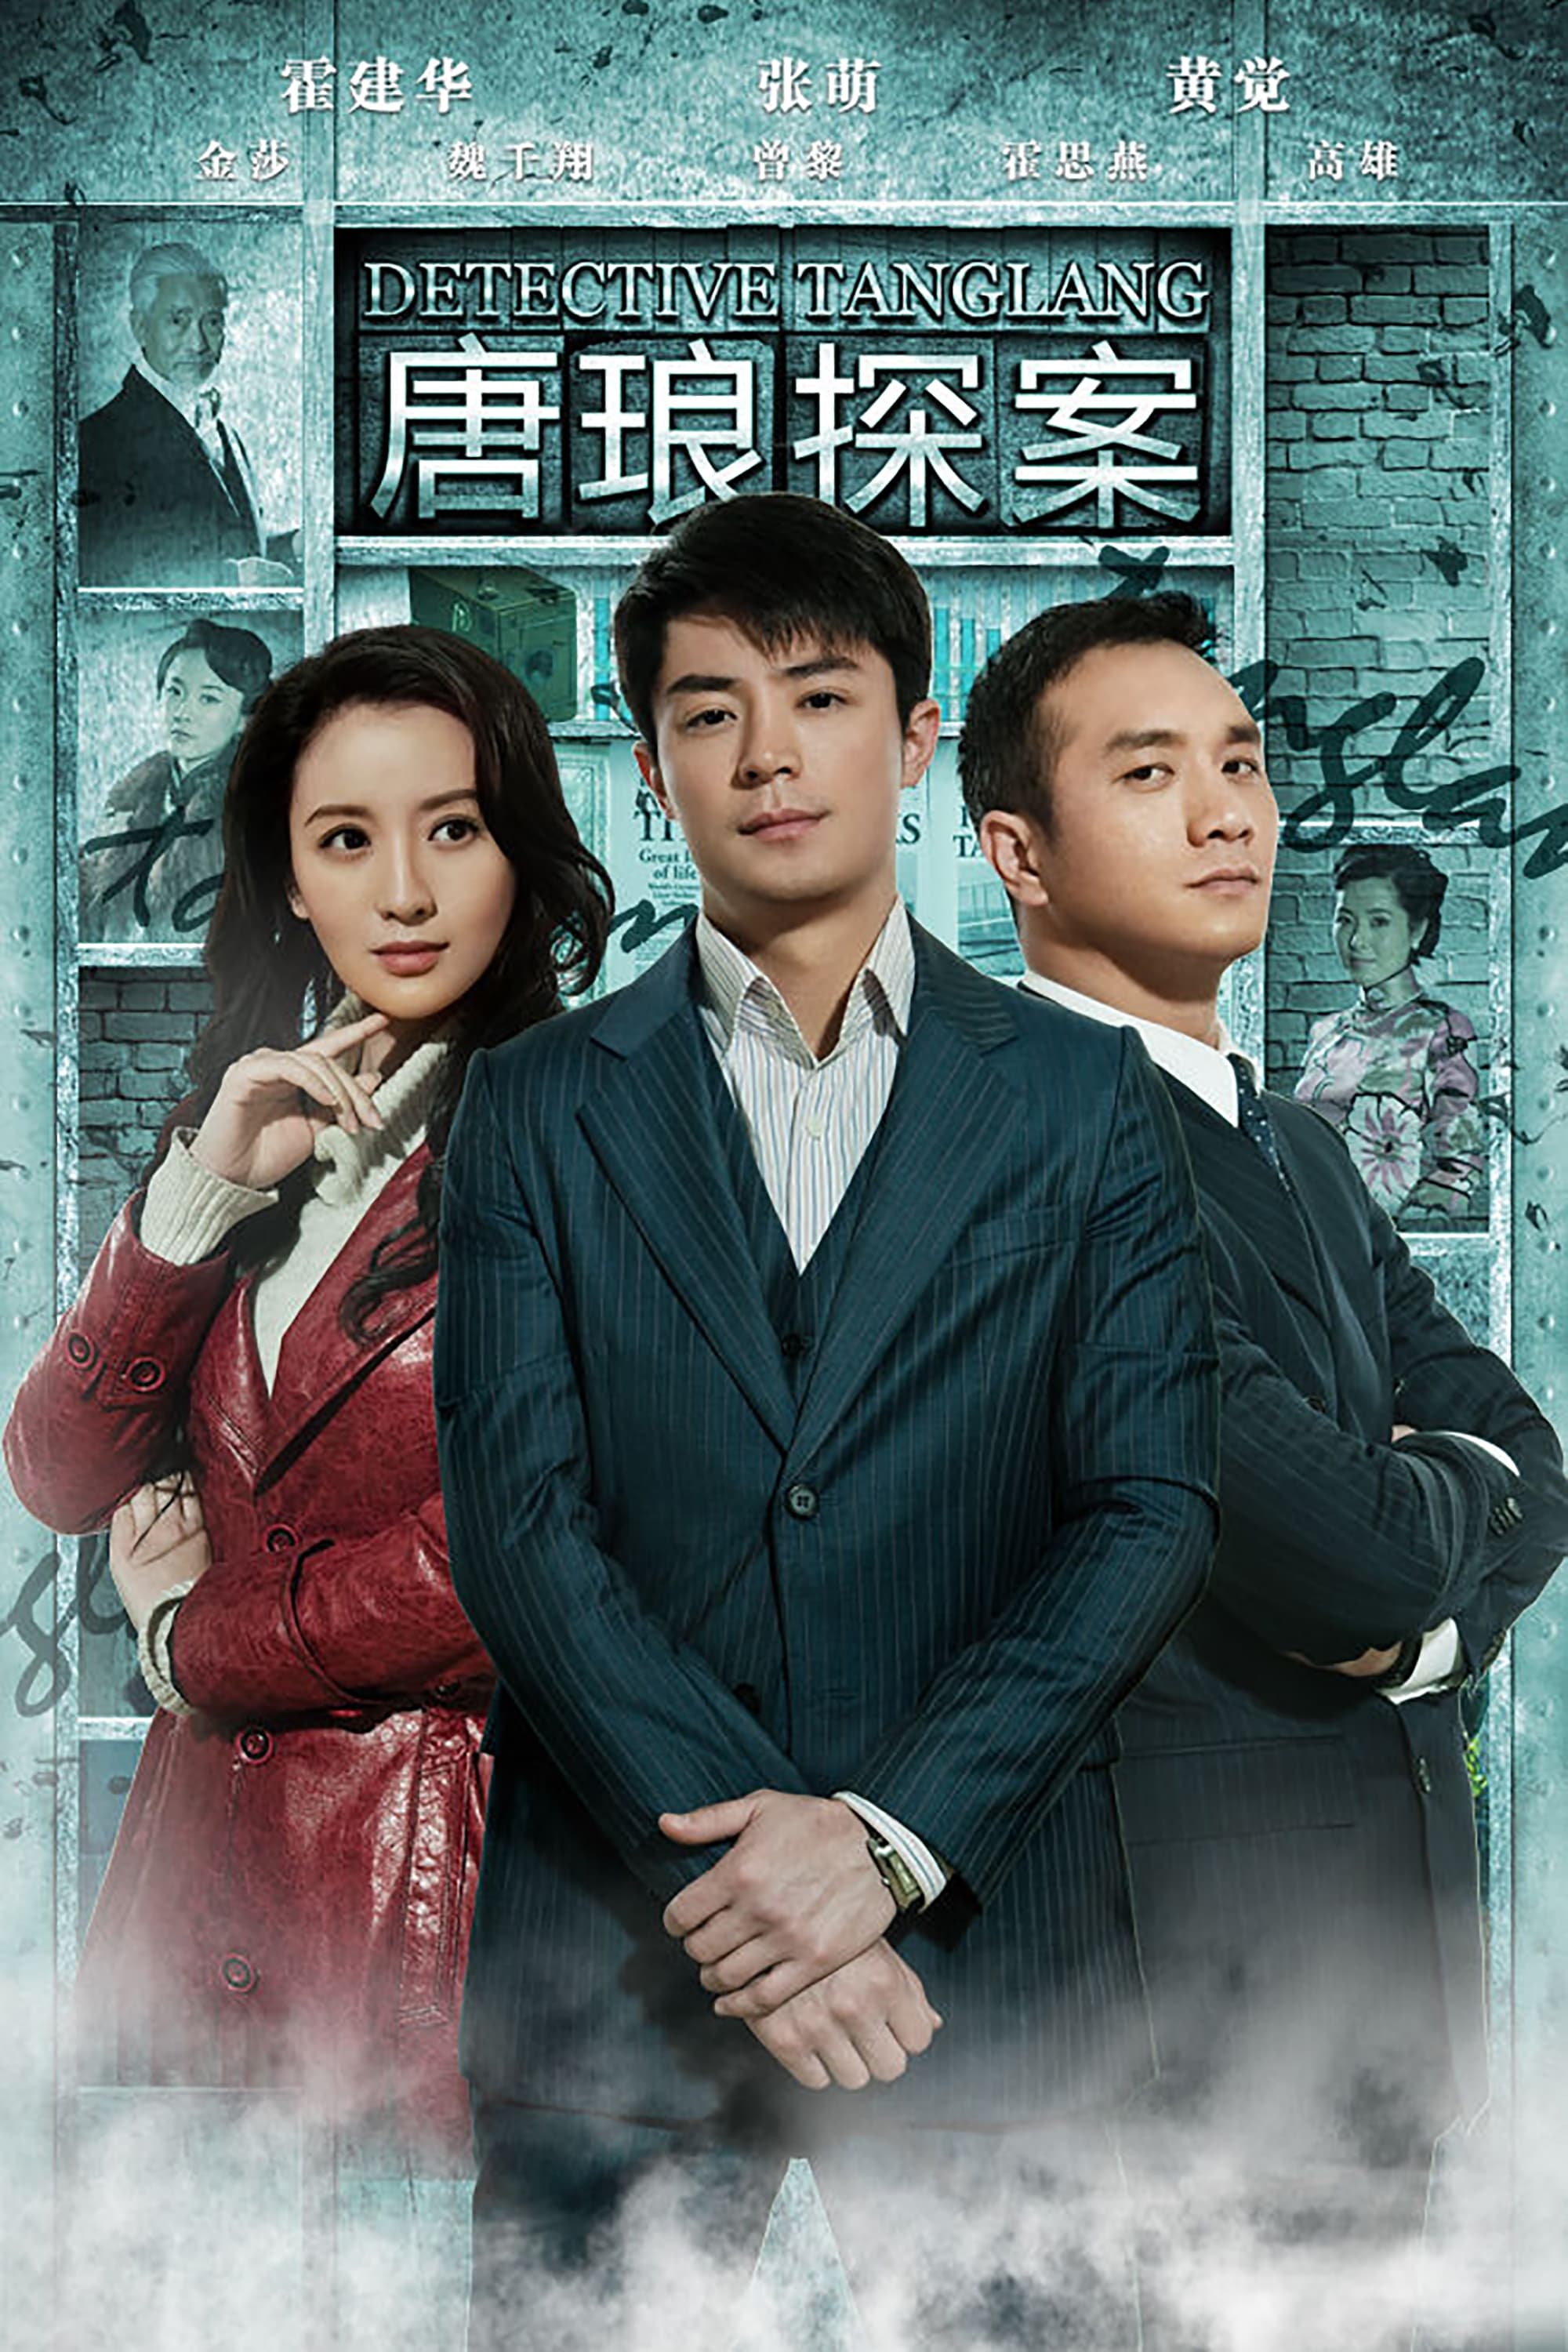 Detective Tanglang (2010)